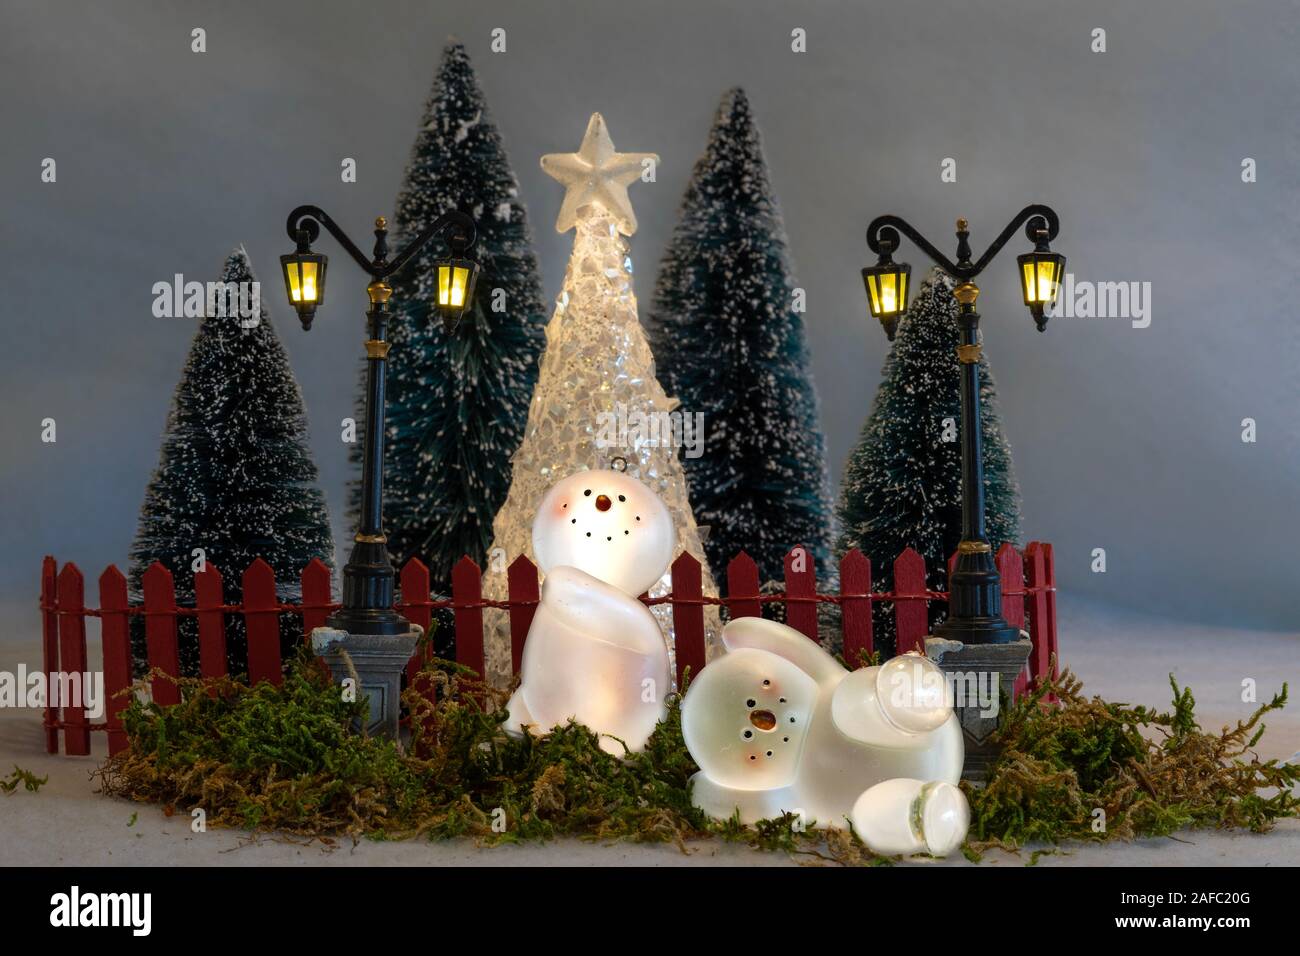 Weihnachtskarte, Spielzeug Schneemänner (Ornamente) Spaß vor einem umzäunten Garten mit Bäumen und Laternen. Stockfoto